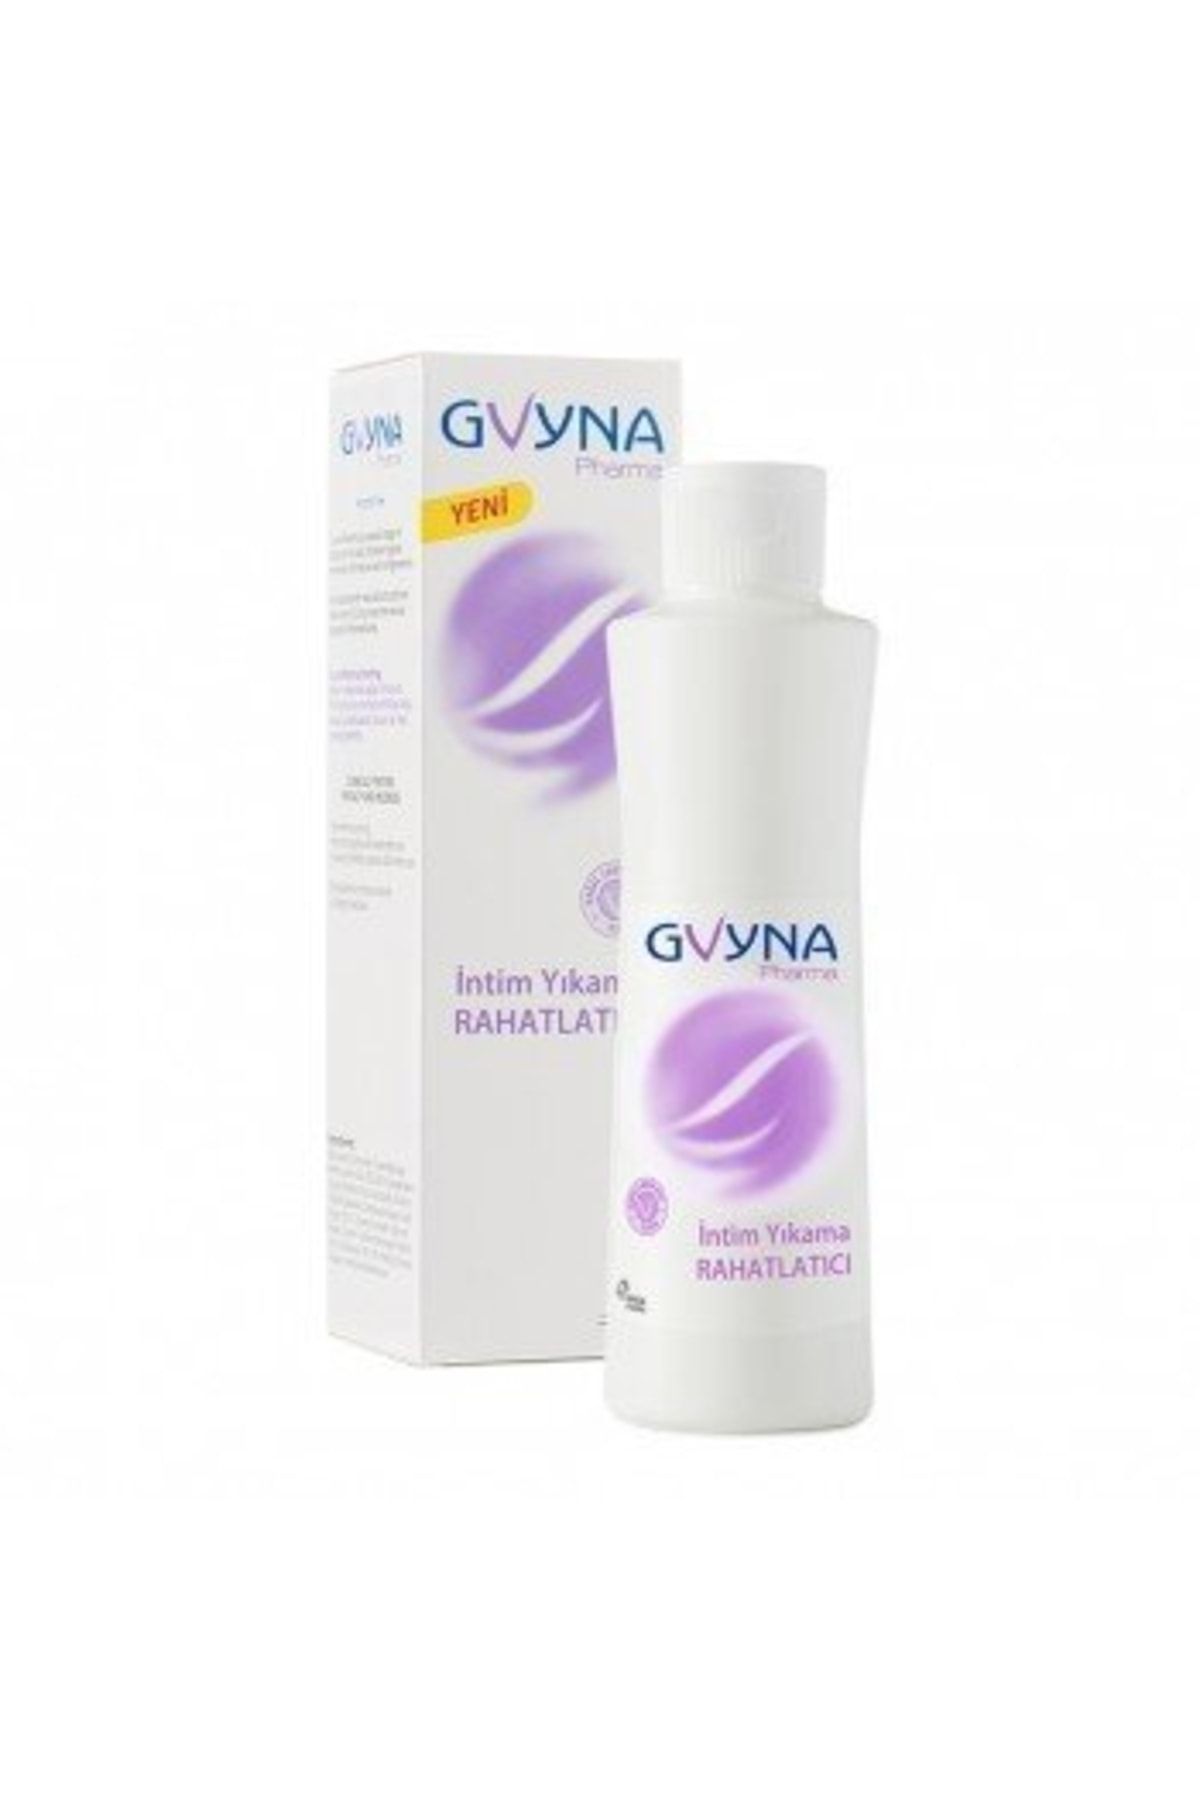 Gvyna Kadınlar Için Genital Bölge Temizleyici - Pharma Intimate Wash Soothing 250 ml 5391520947346